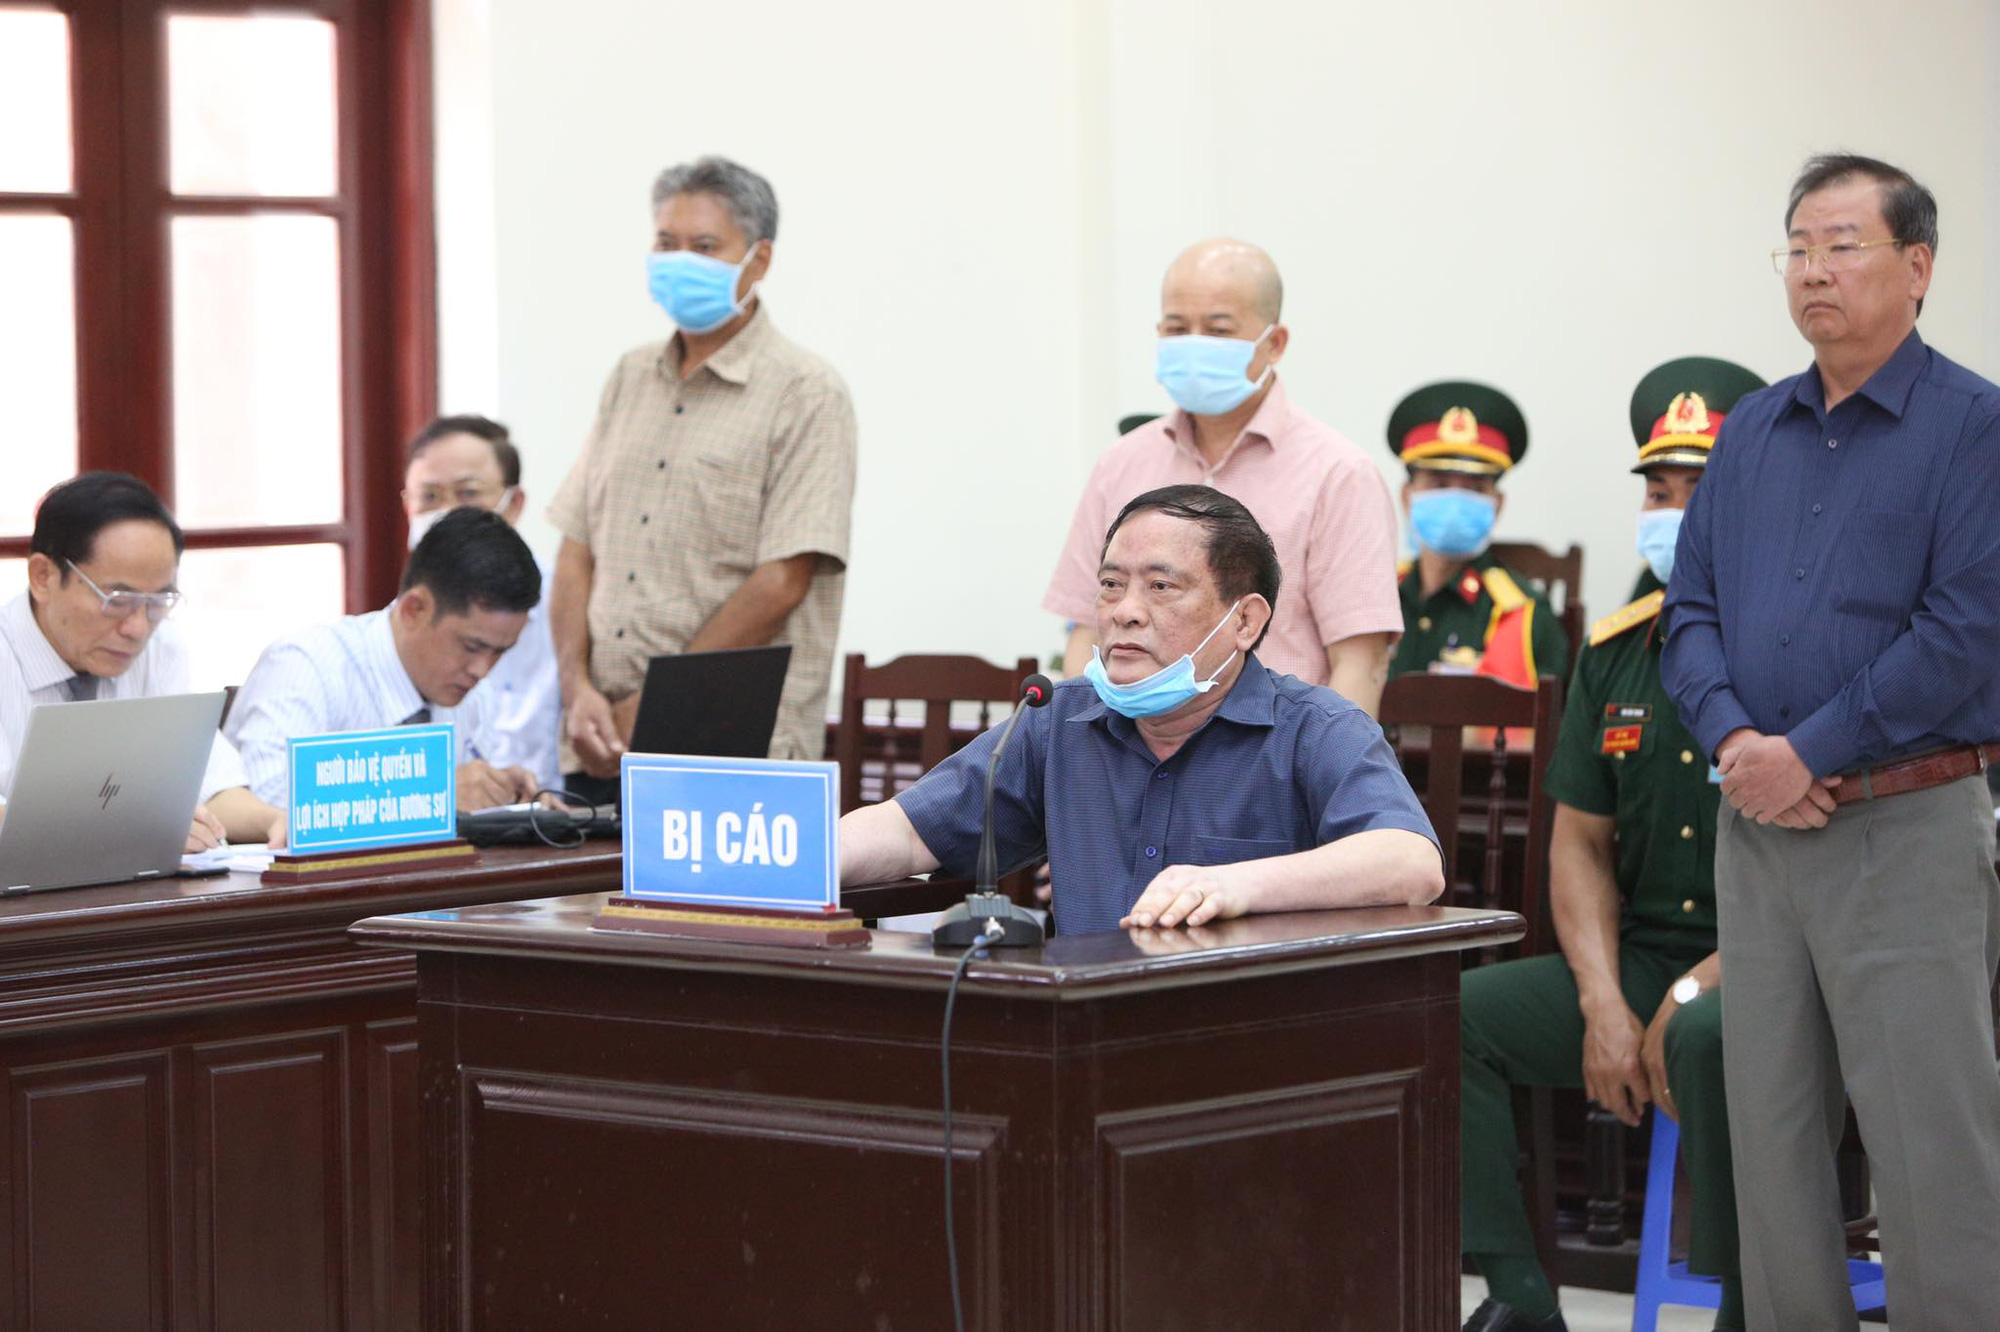 Đô đốc Nguyễn Văn Hiến bị tuyên, Út “trọc” 30 năm - Ảnh 3.